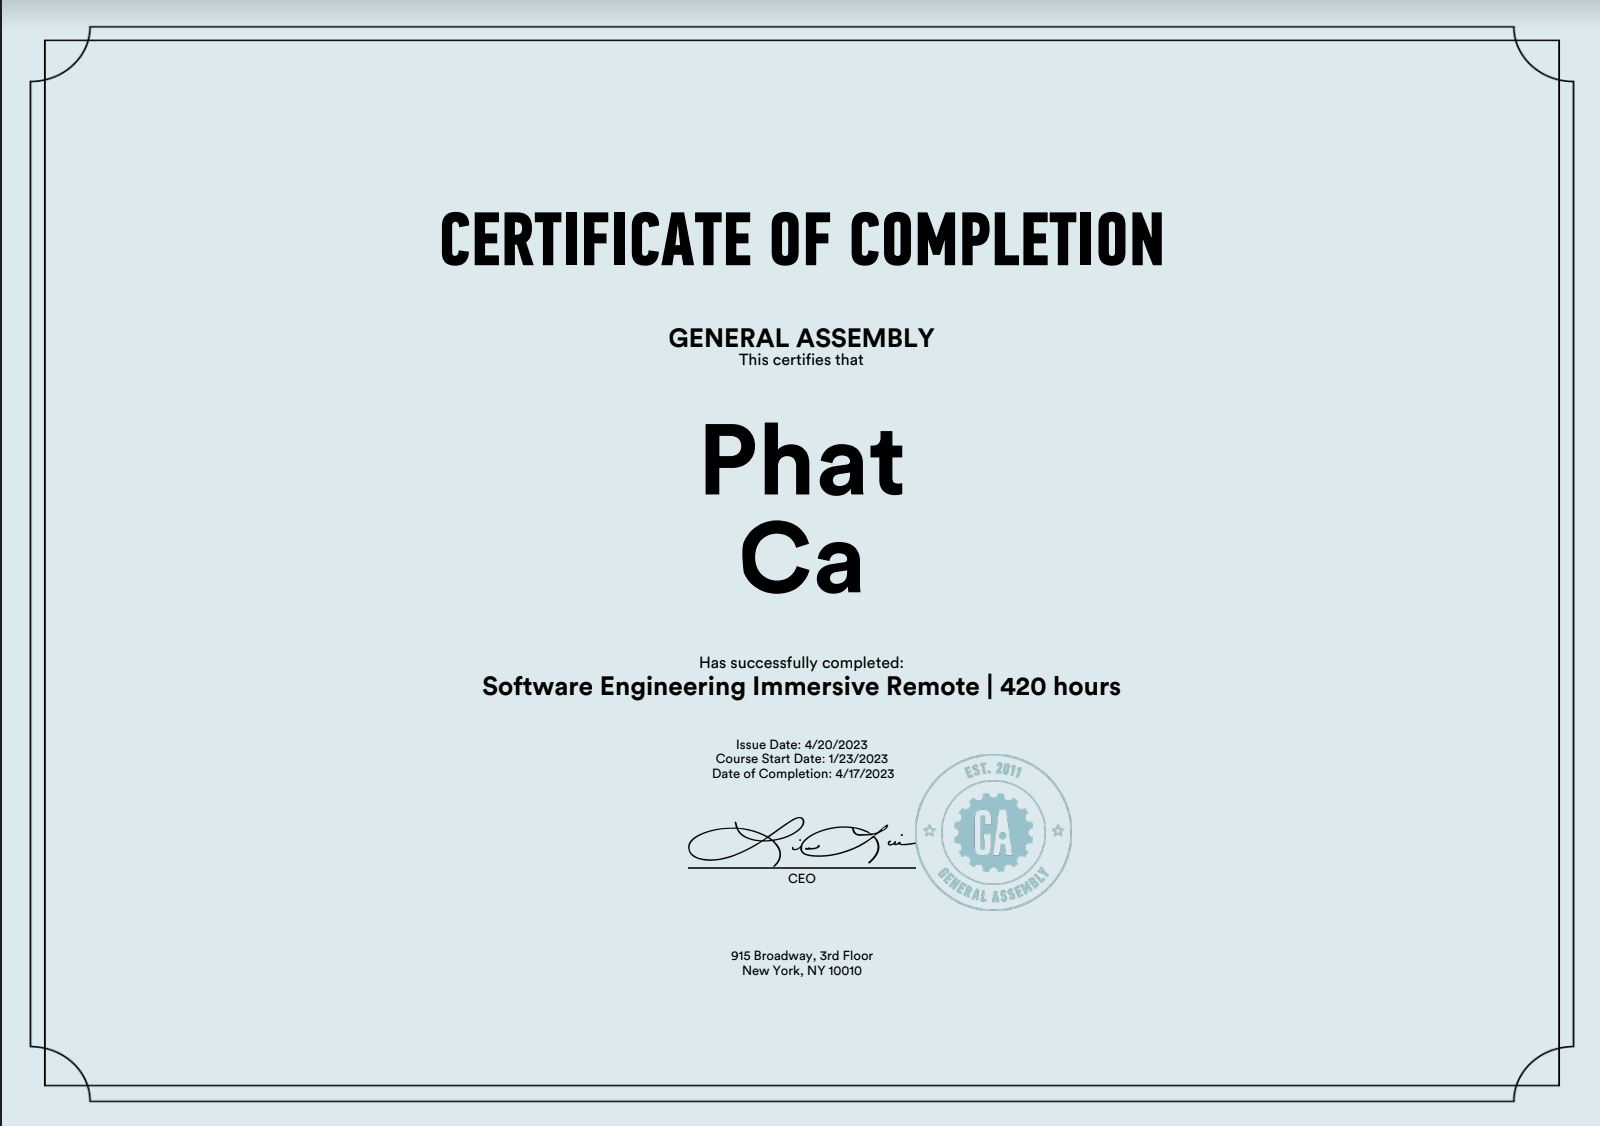 GA certificate